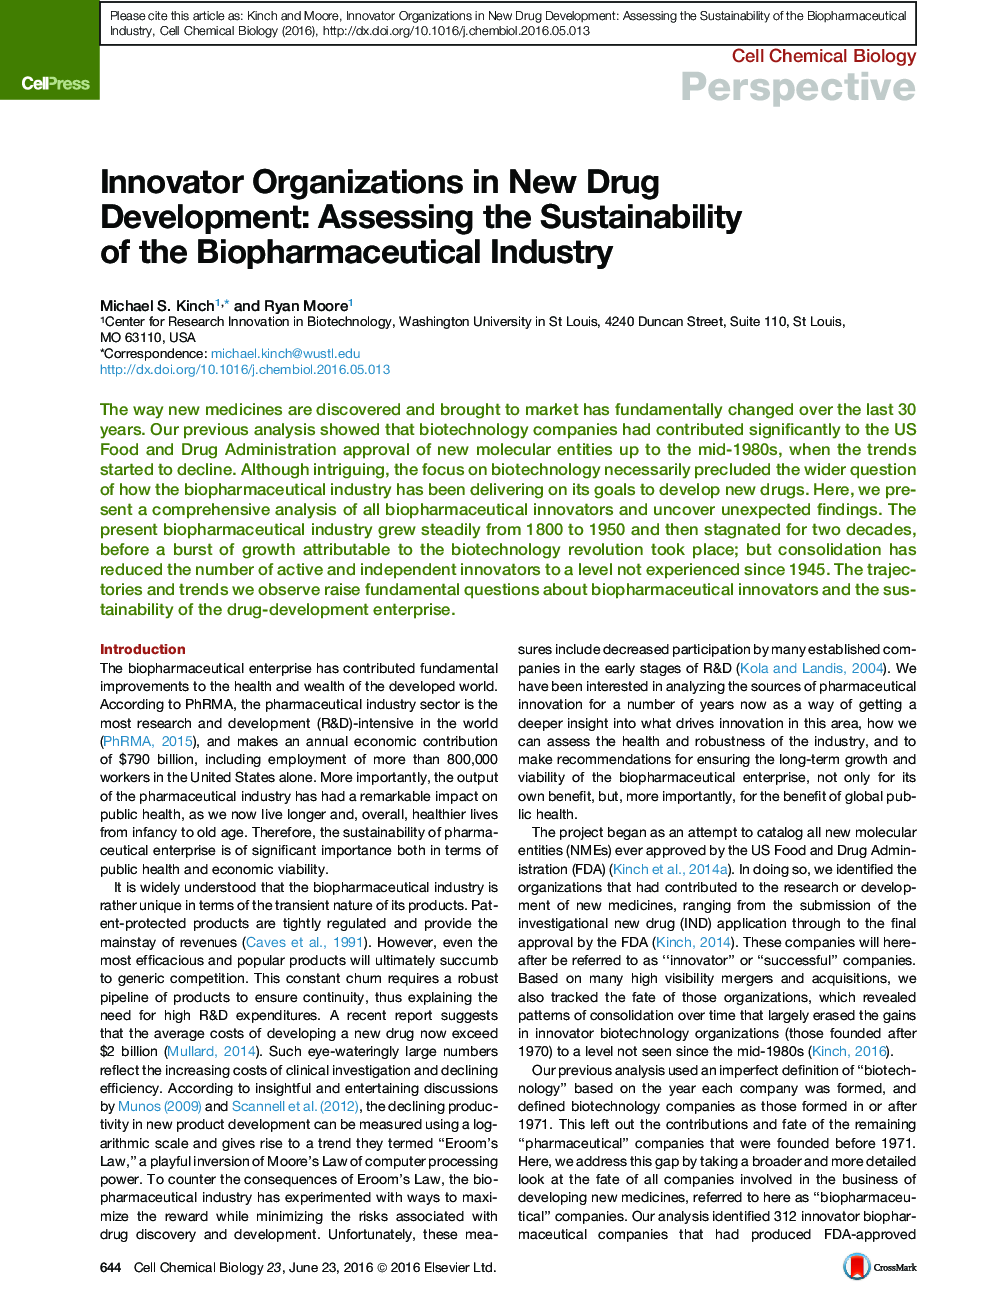 سازمان های نوآور در توسعه داروهای جدید: ارزیابی پایداری صنعت بیوفارمینتی 